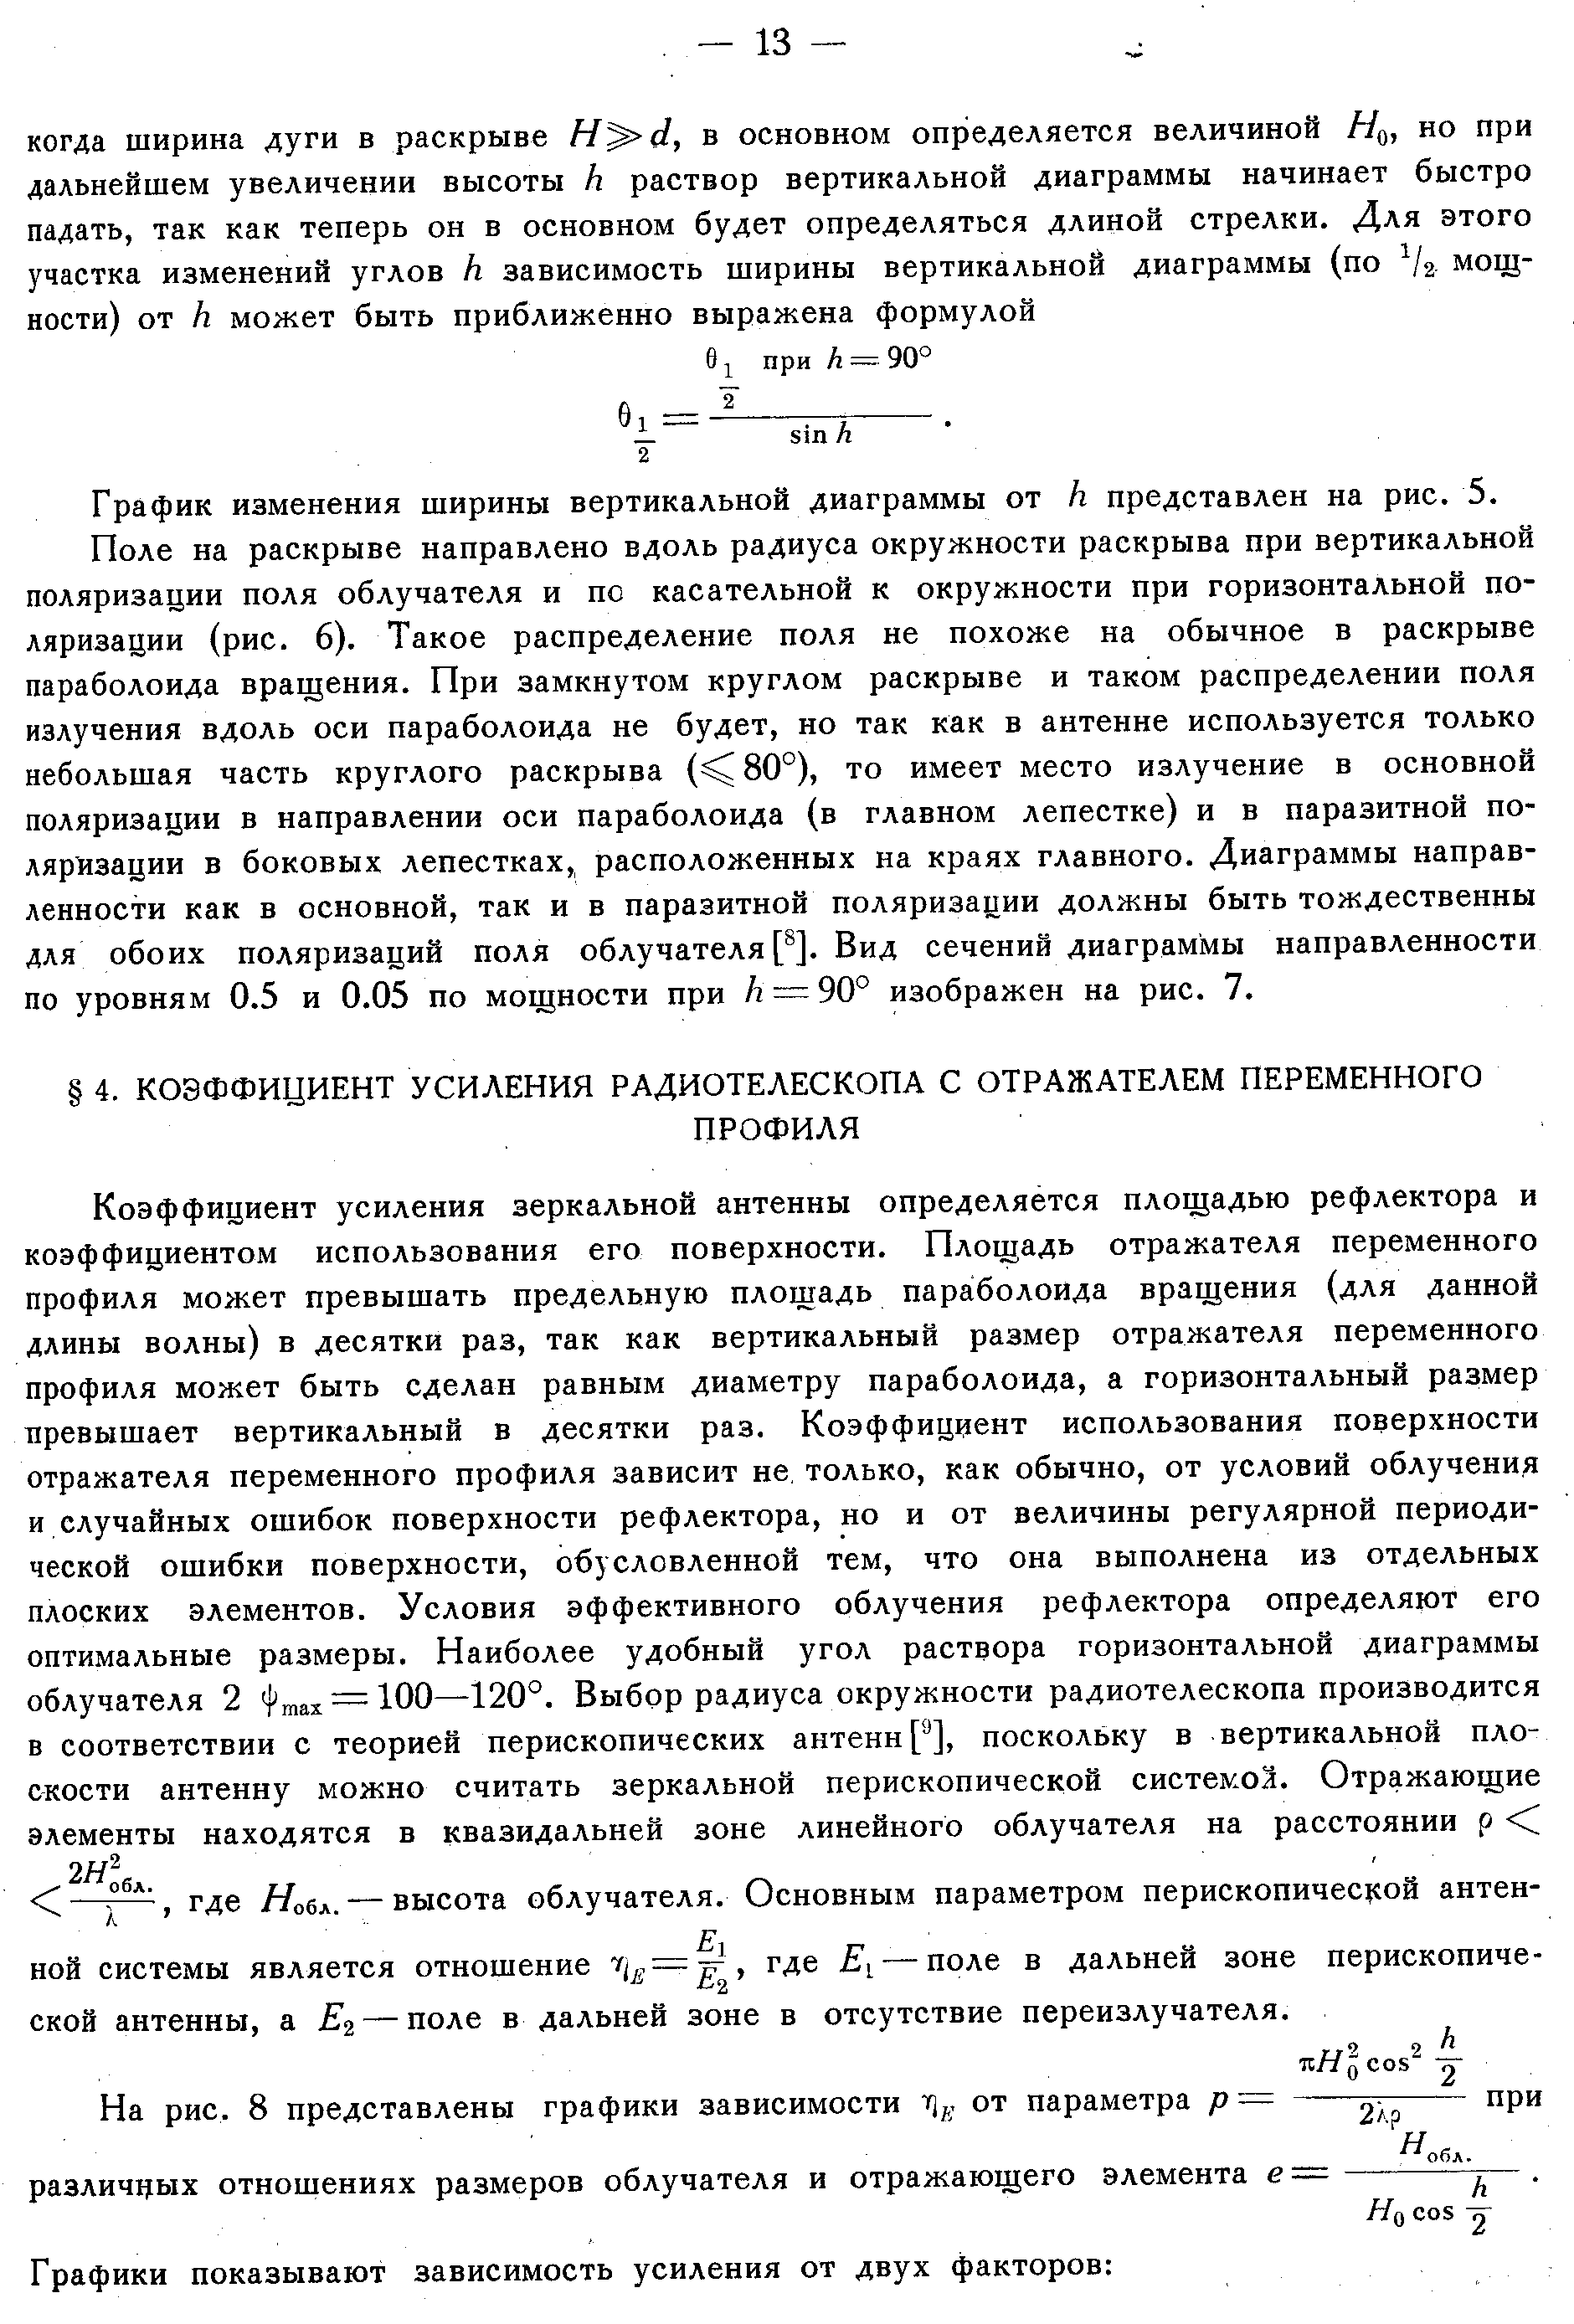 Хайкин С.Э. и др.,стр.11